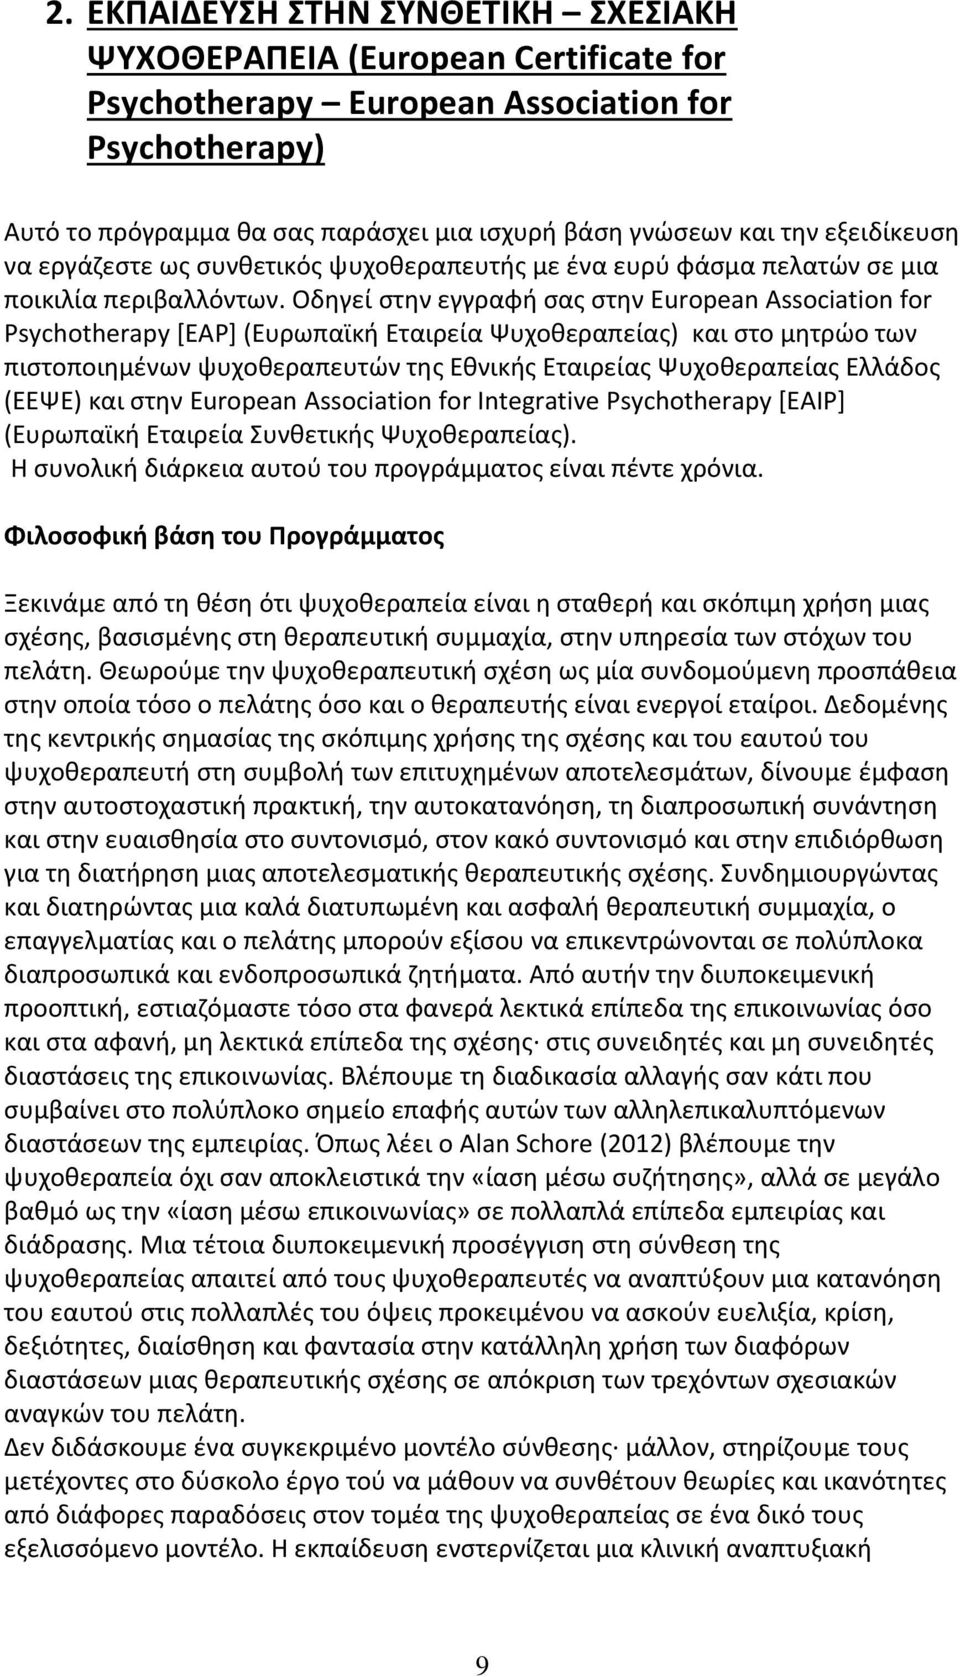 Οδηγεί στην εγγραφή σας στην European Association for Psychotherapy [EAP] (Ευρωπαϊκή Εταιρεία Ψυχοθεραπείας) και στο μητρώο των πιστοποιημένων ψυχοθεραπευτών της Εθνικής Εταιρείας Ψυχοθεραπείας